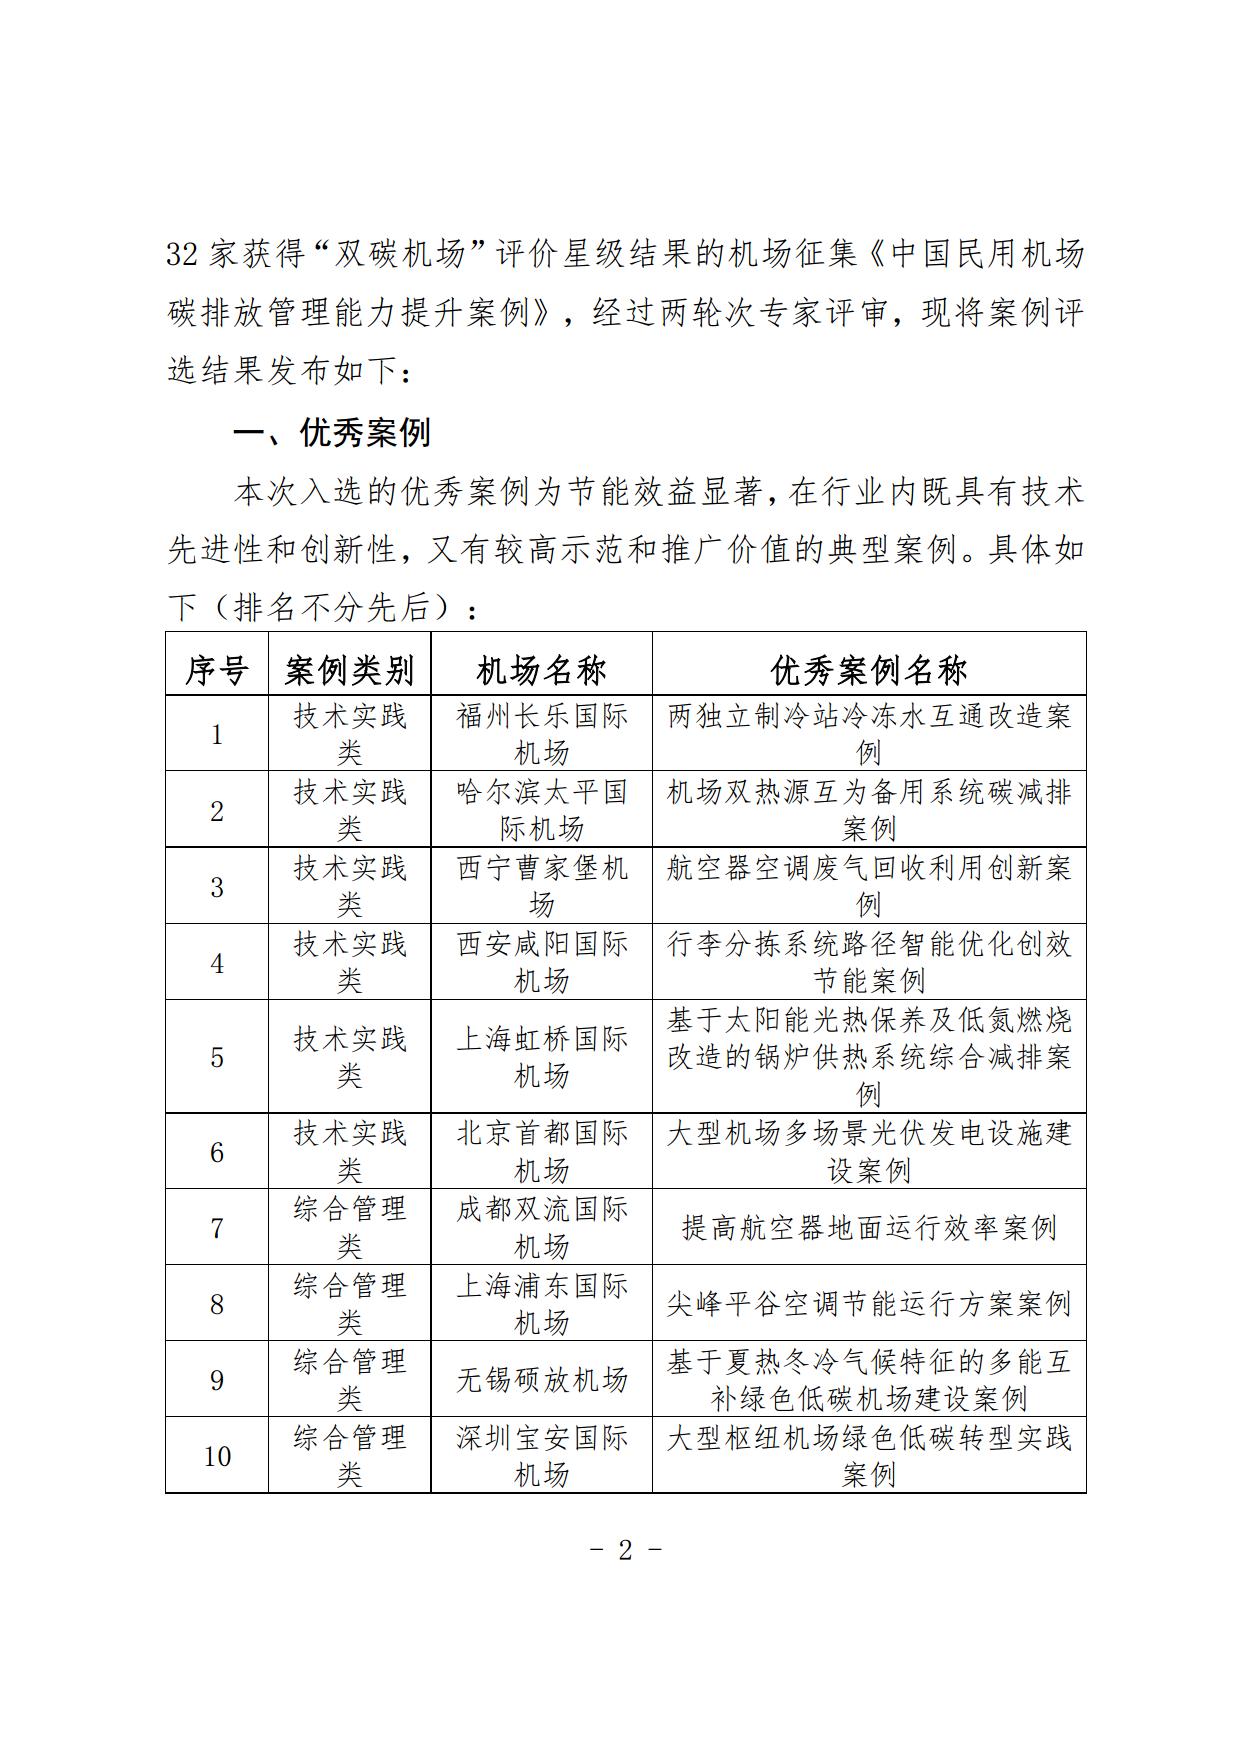 【扫描】关于《中国民用机场碳排放管理能力提升优秀案例》入选结果的通知_page2.jpg